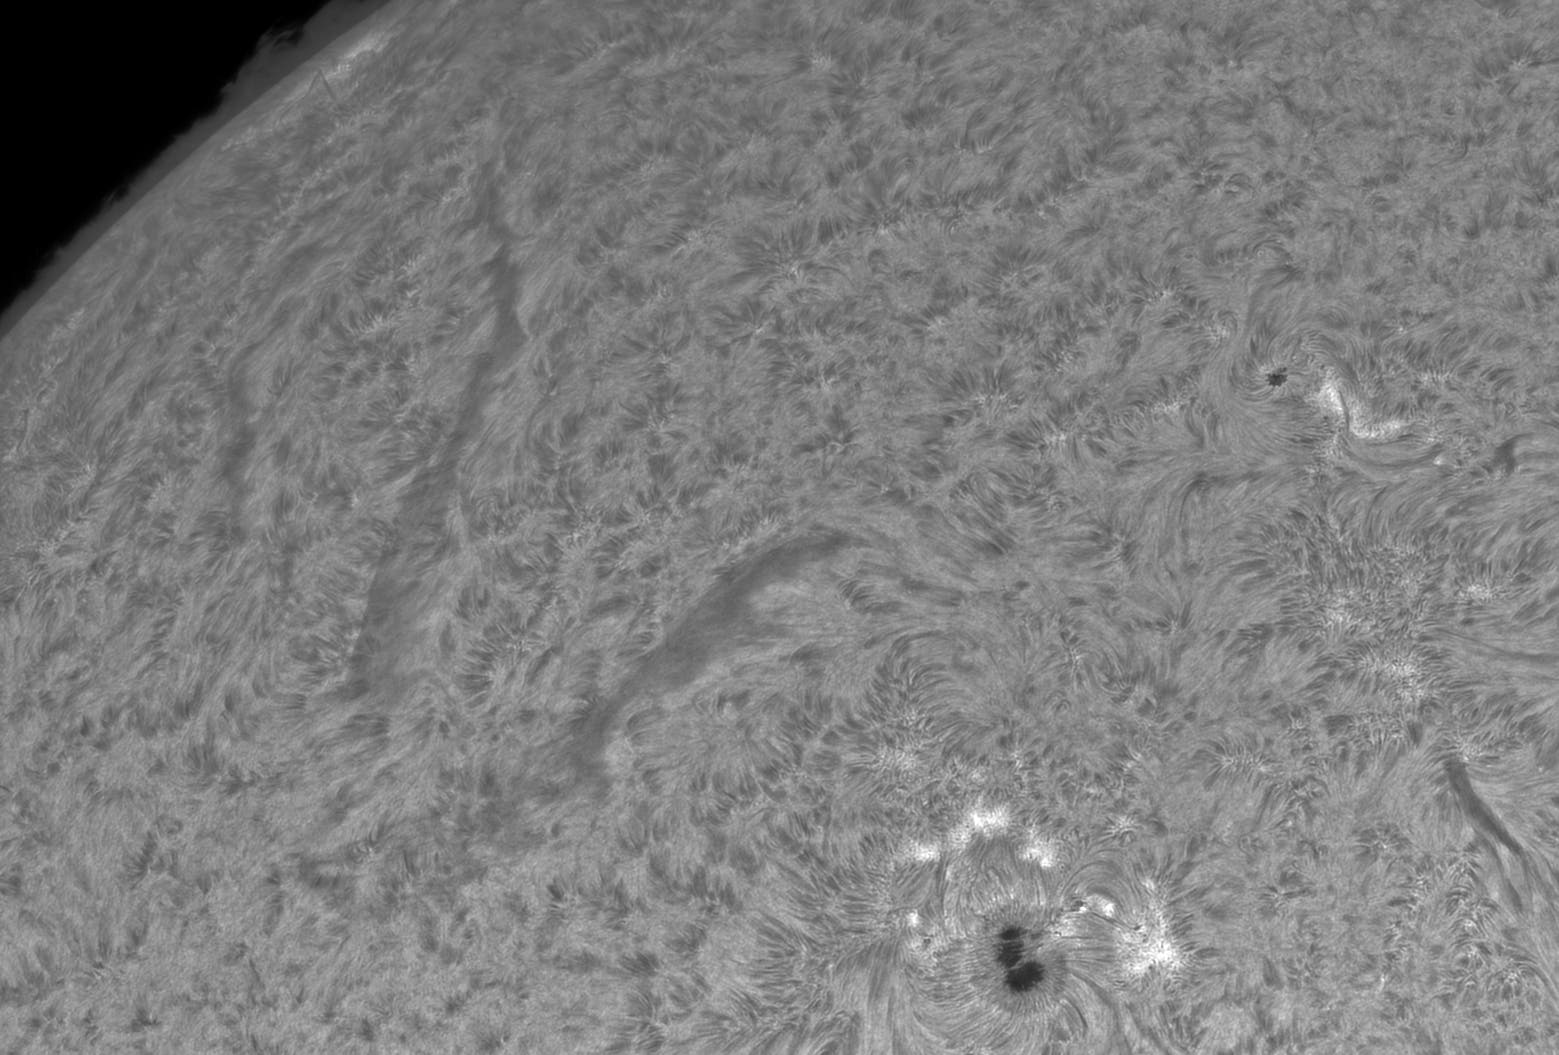 Sonne in H-alpha - 7. April 